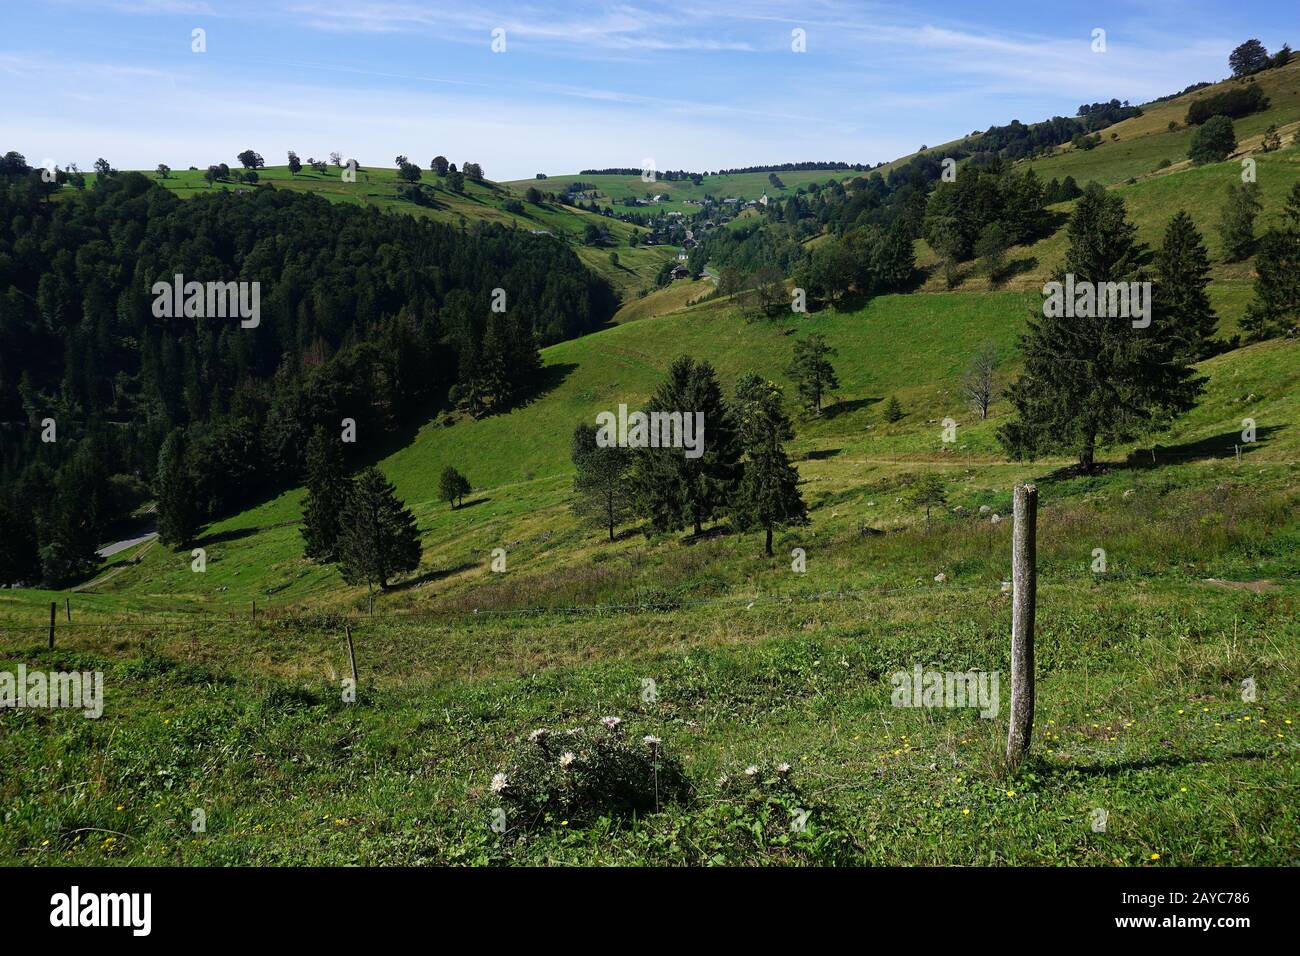 Wandern in der Nähe des Berges Schauinsland im Schwarzwald, Deutschland Stockfoto